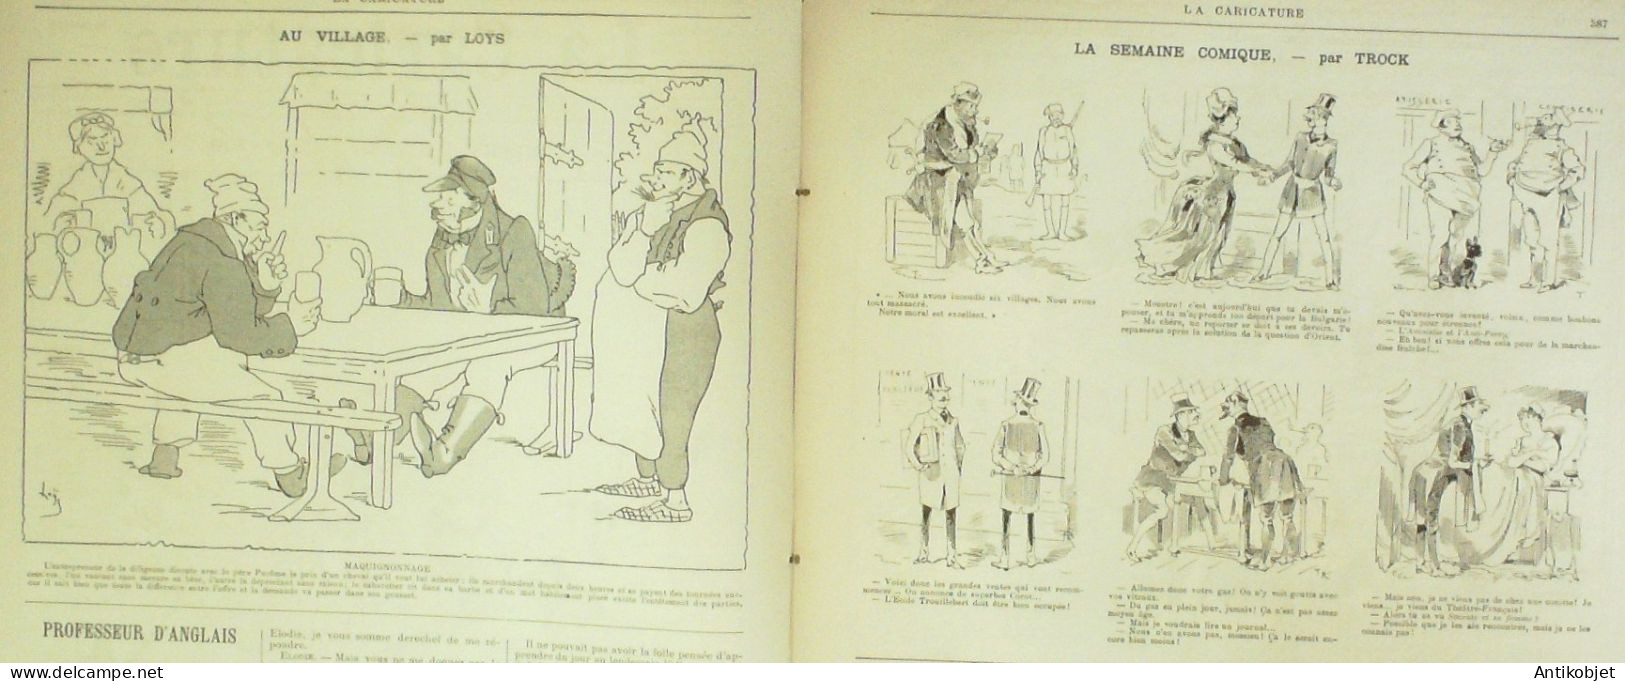 La Caricature 1885 N°310 Courses D'hiver Job Massenet Par Luque Rabelais Toto Robida - Riviste - Ante 1900